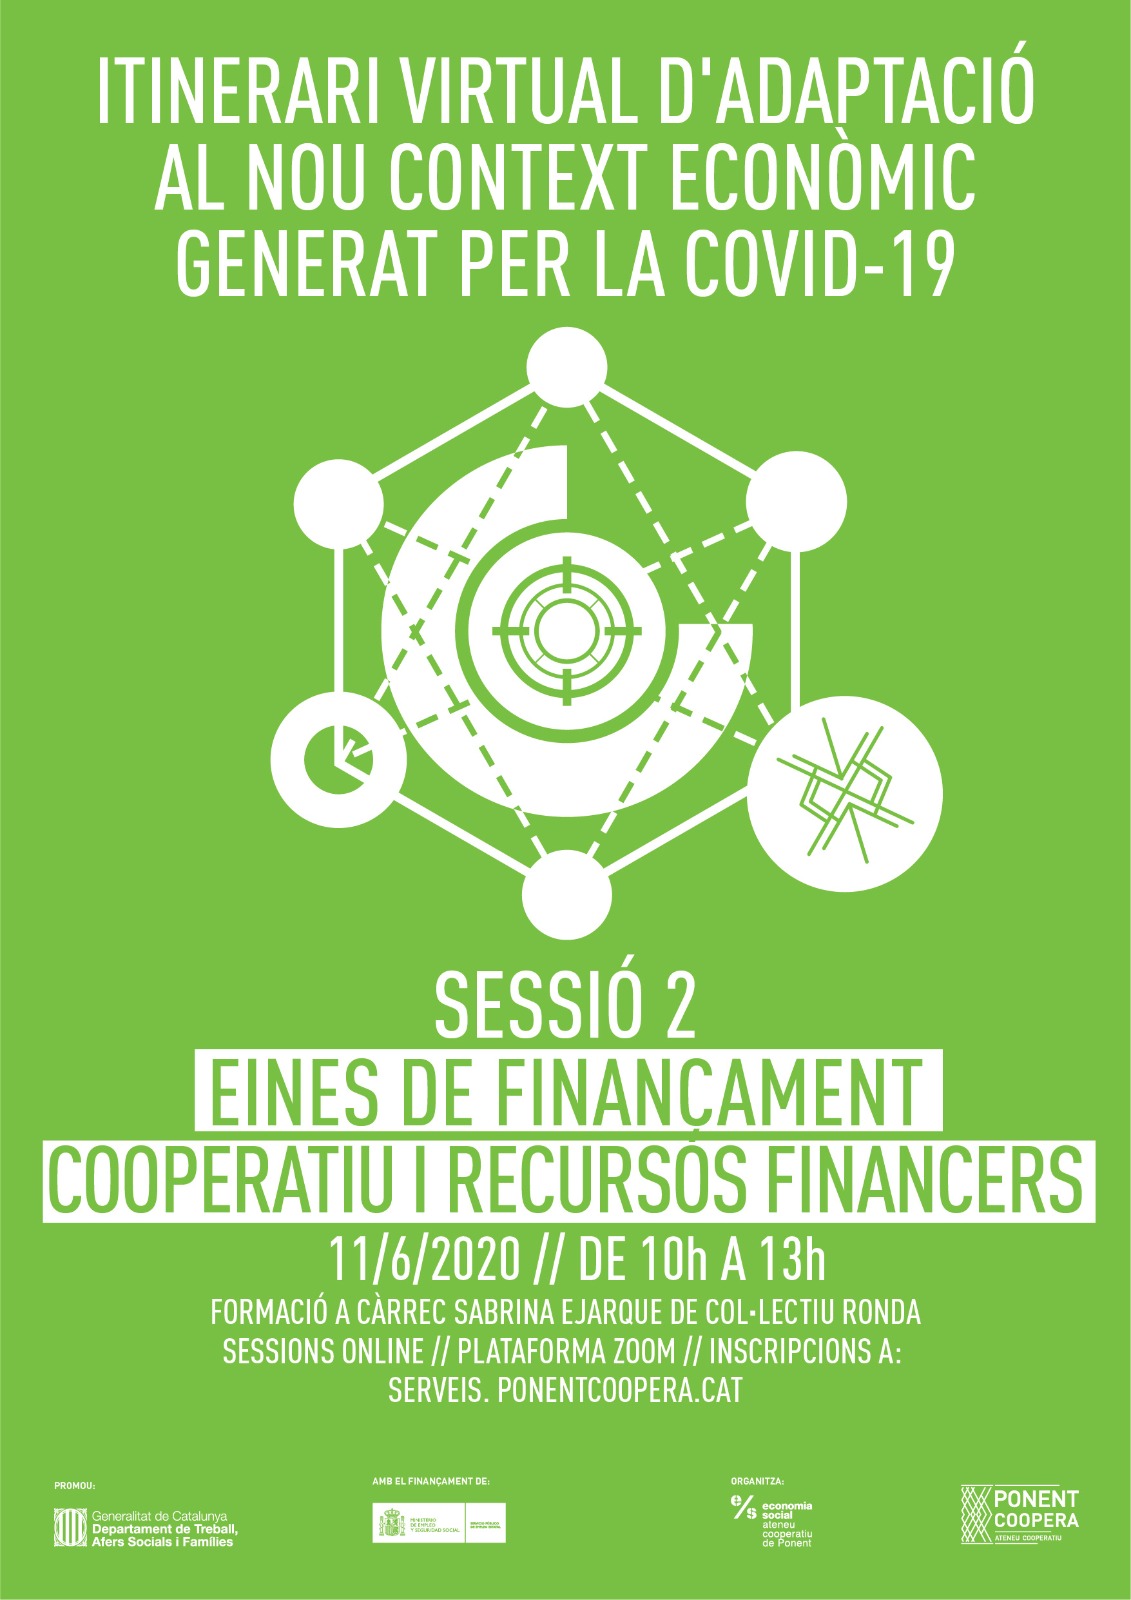 Itinerari formatiu d'adaptació al nou context econòmic generat per la Covid-19 / Sessió 2